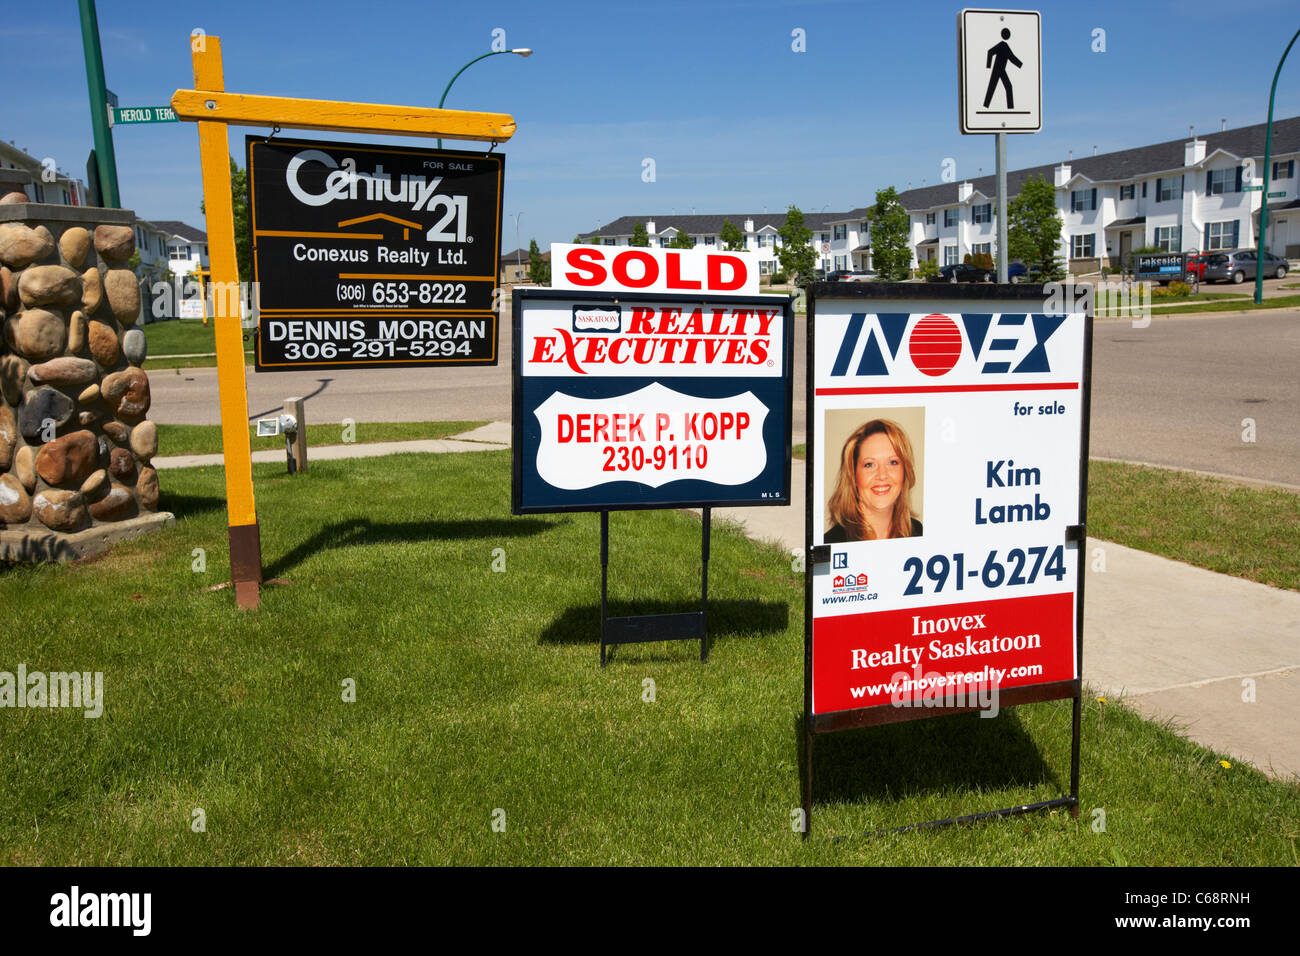 Verkauft und zum Verkauf adterising Boards neue Entwicklung konkurrierender Realtor unterzeichnet Saskatoon Saskatchewan Kanada kanadische Immobilienmarkt-Konkurrenz beschäftigt Stockfoto